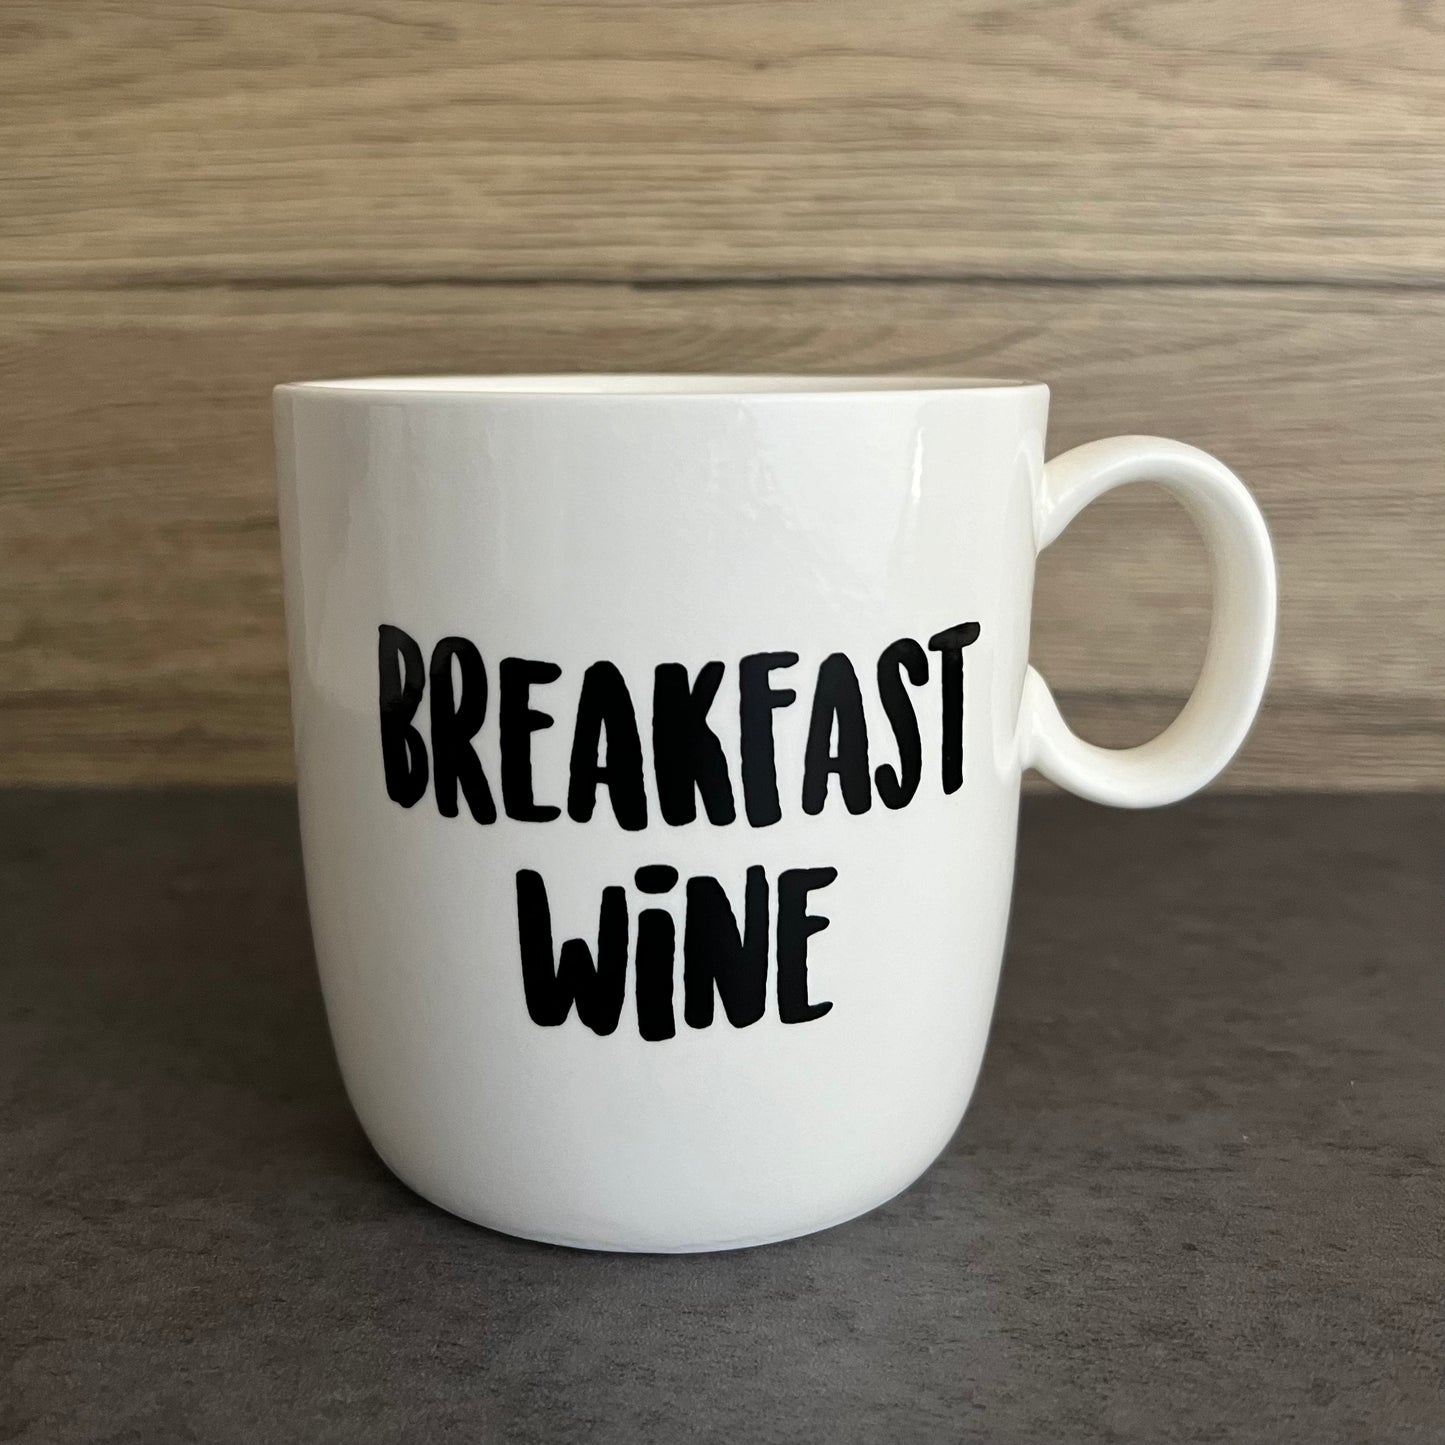 Breakfast wine mug